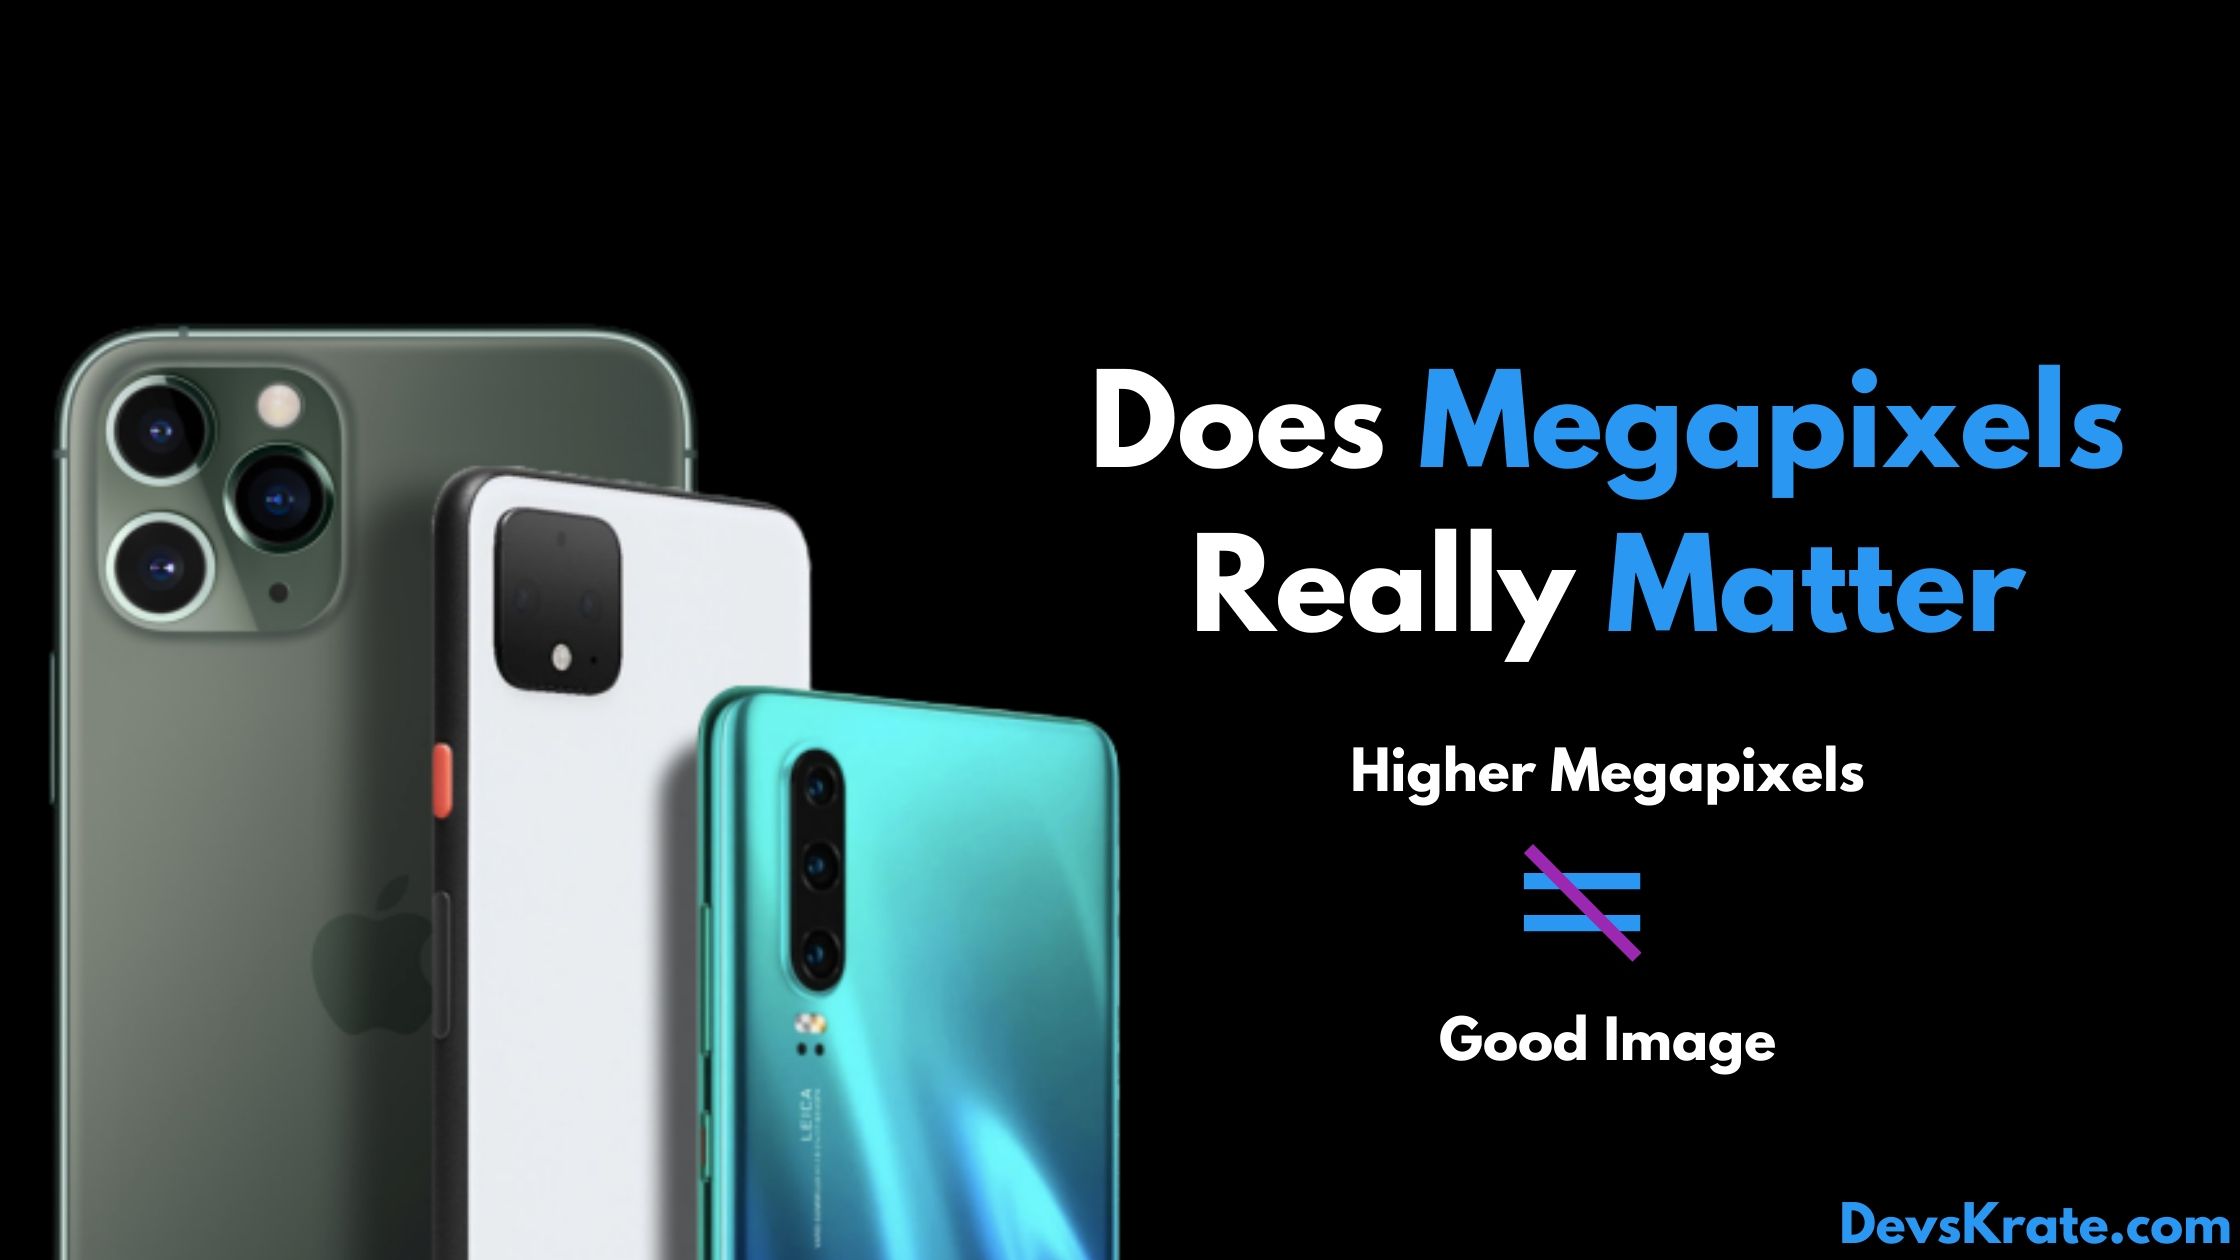 Does Megapixels Matter?